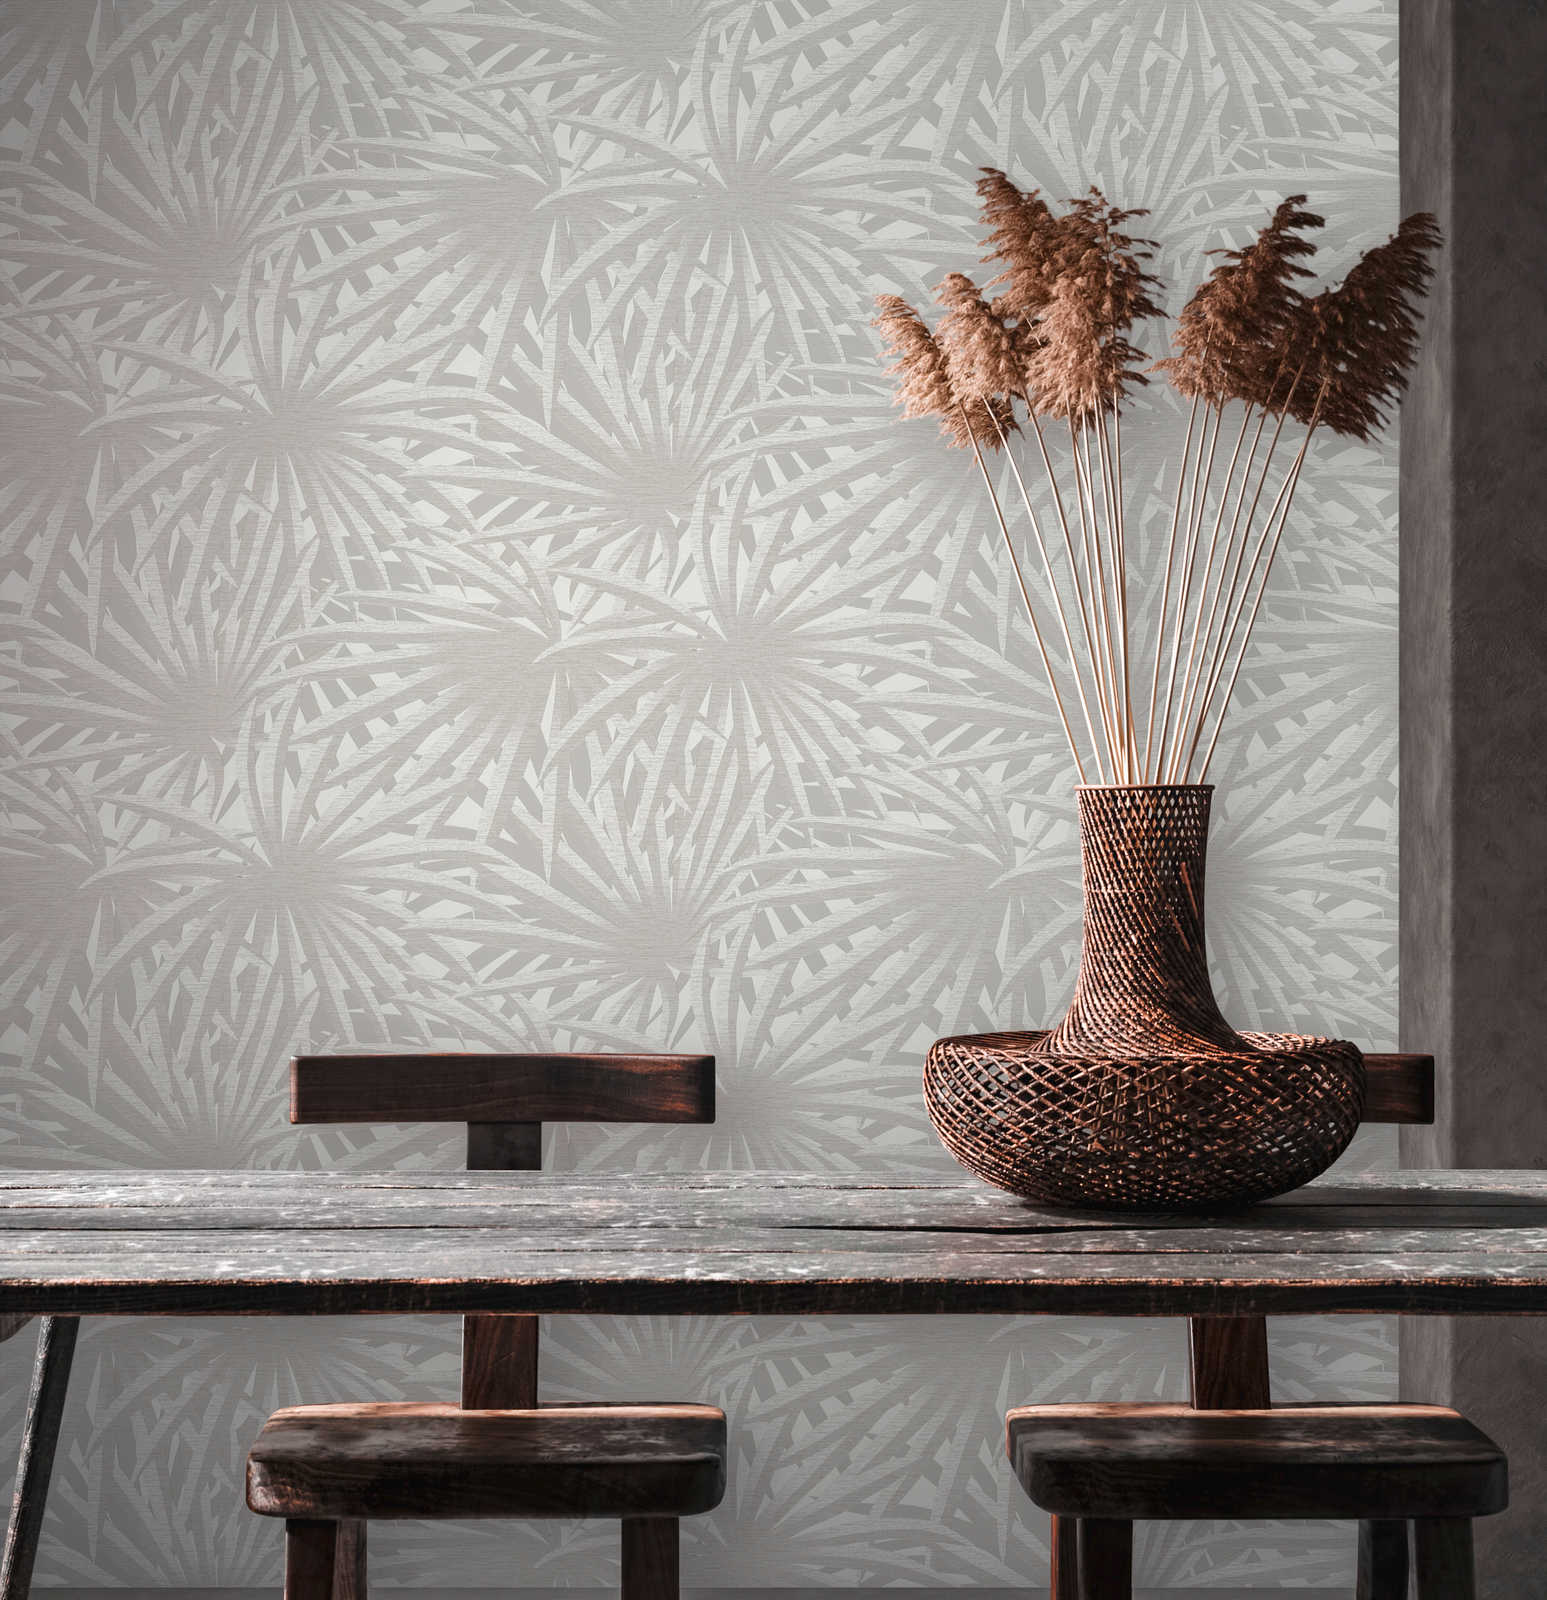             Non-woven wallpaper leaf design with metallic luster - grey, metallic, white
        